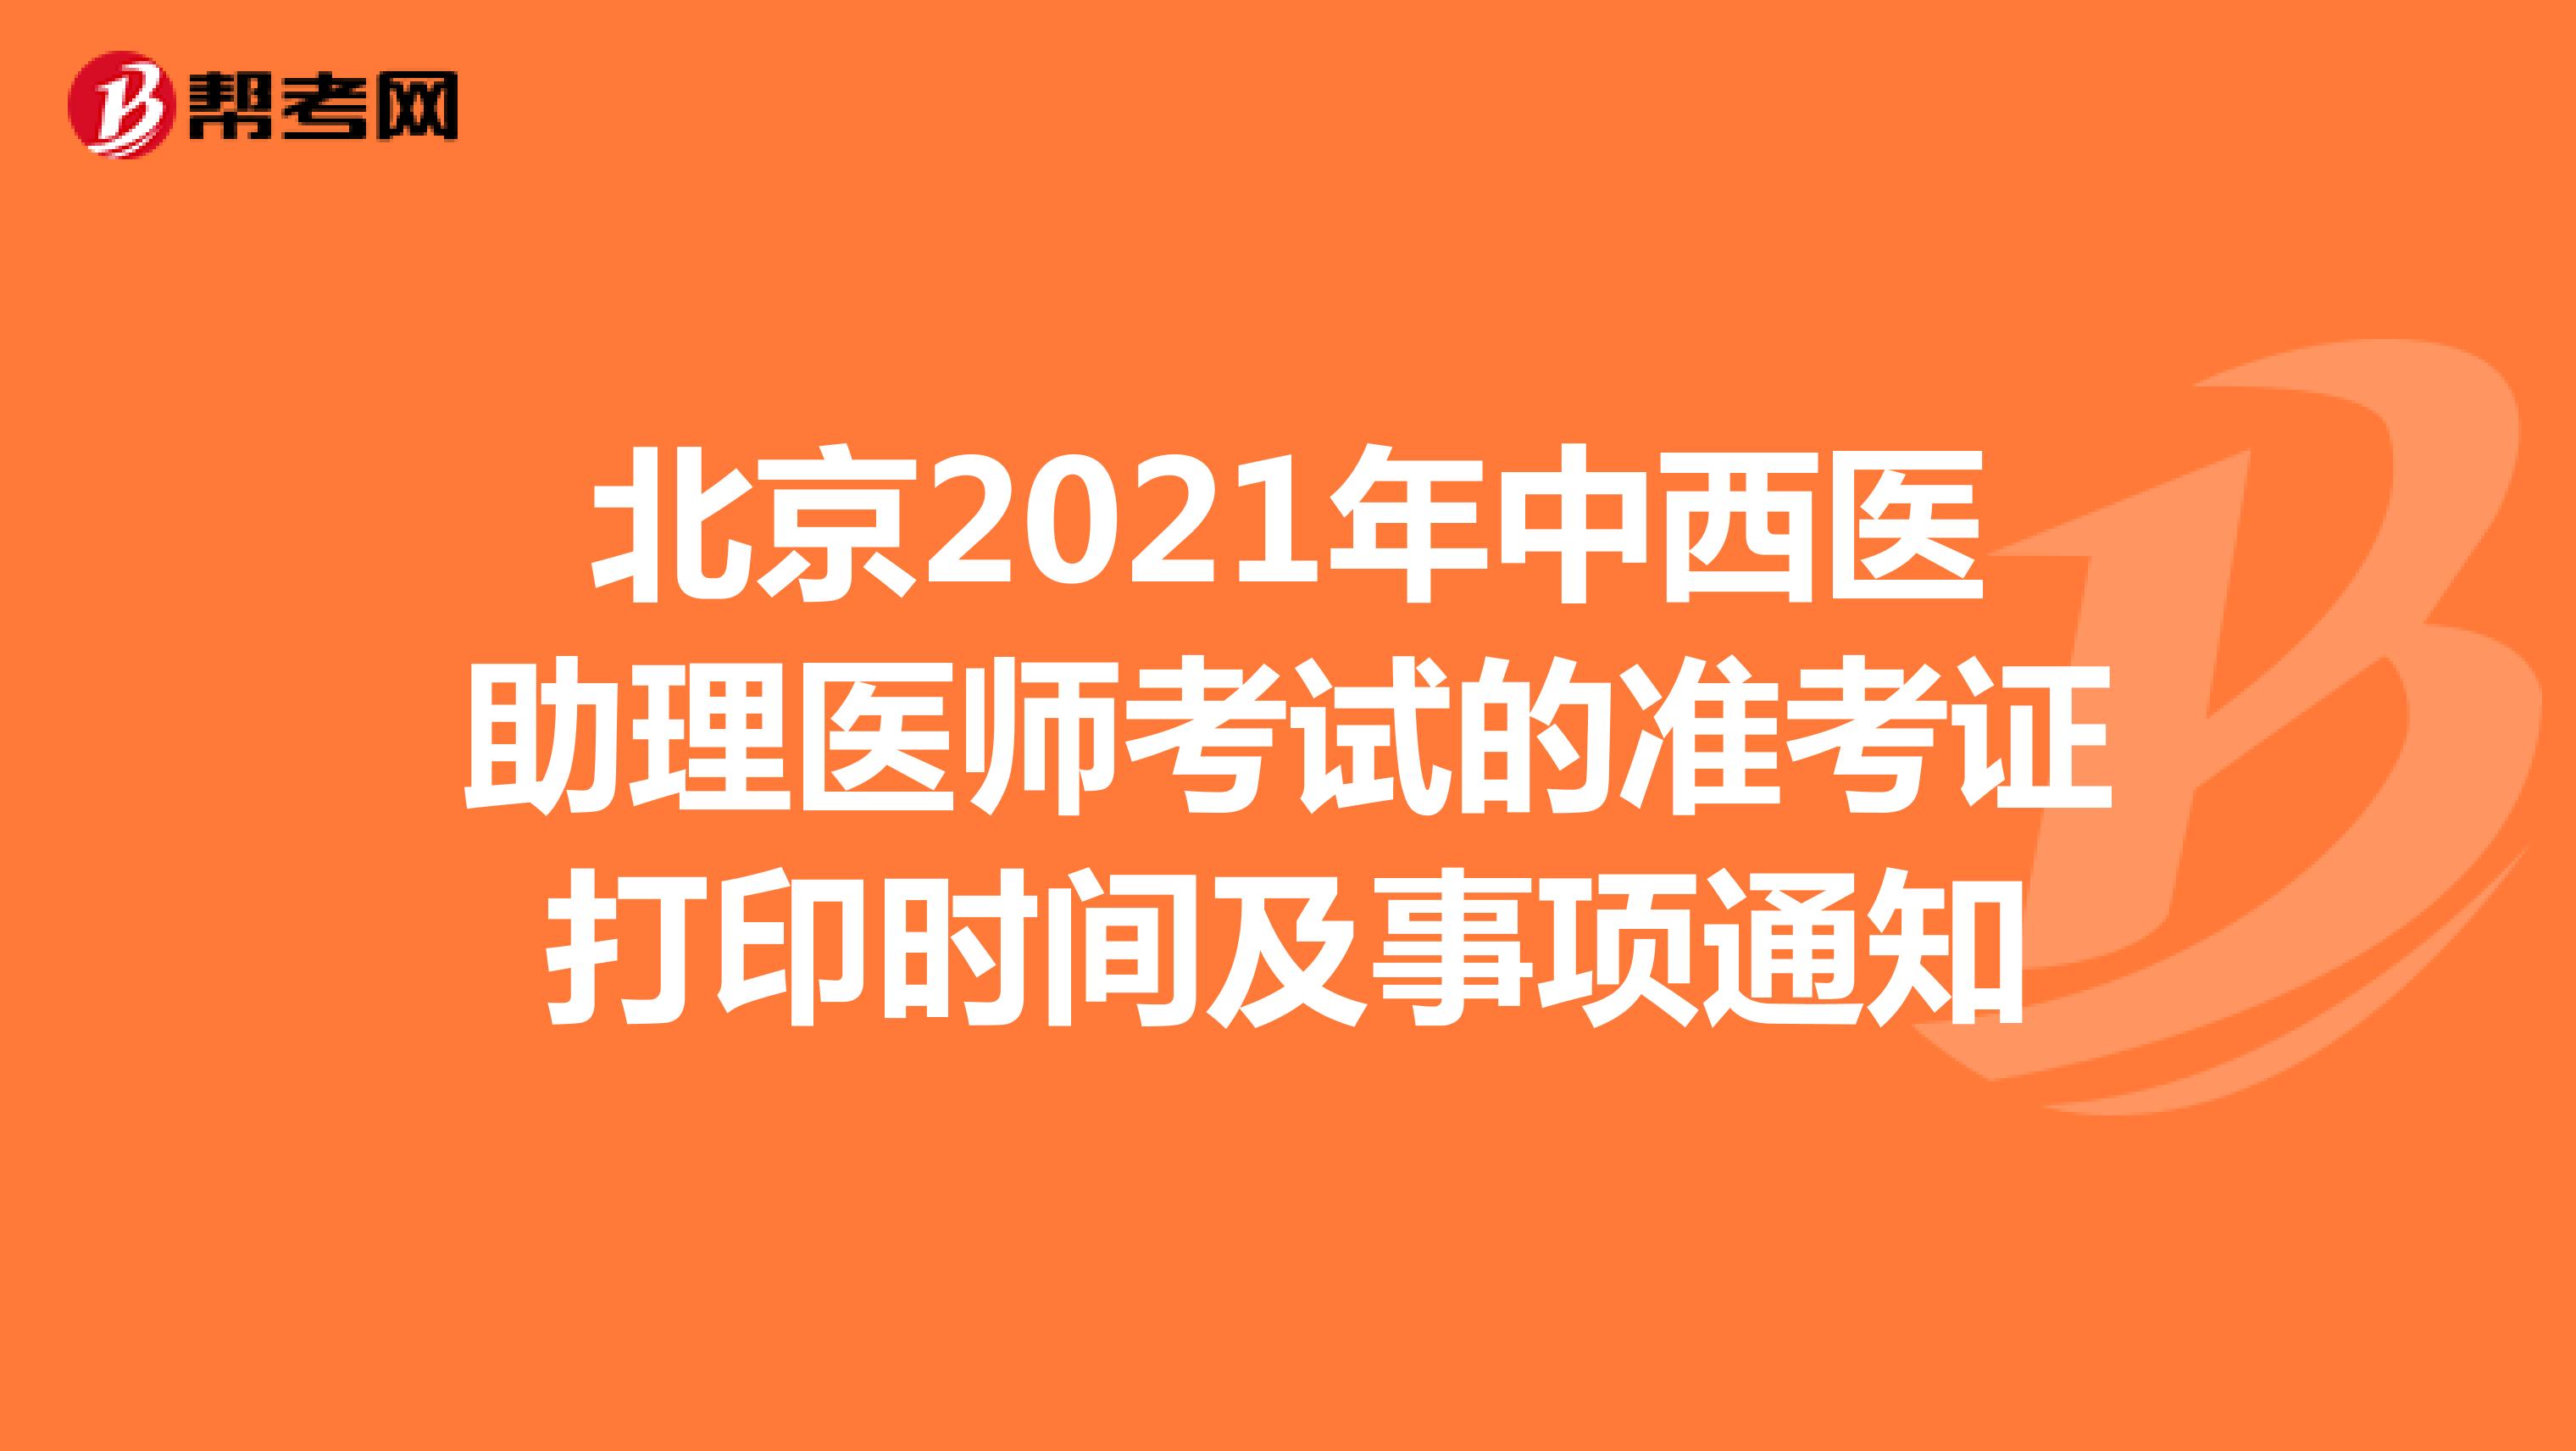 北京2021年中西医助理医师考试的准考证打印时间及事项通知